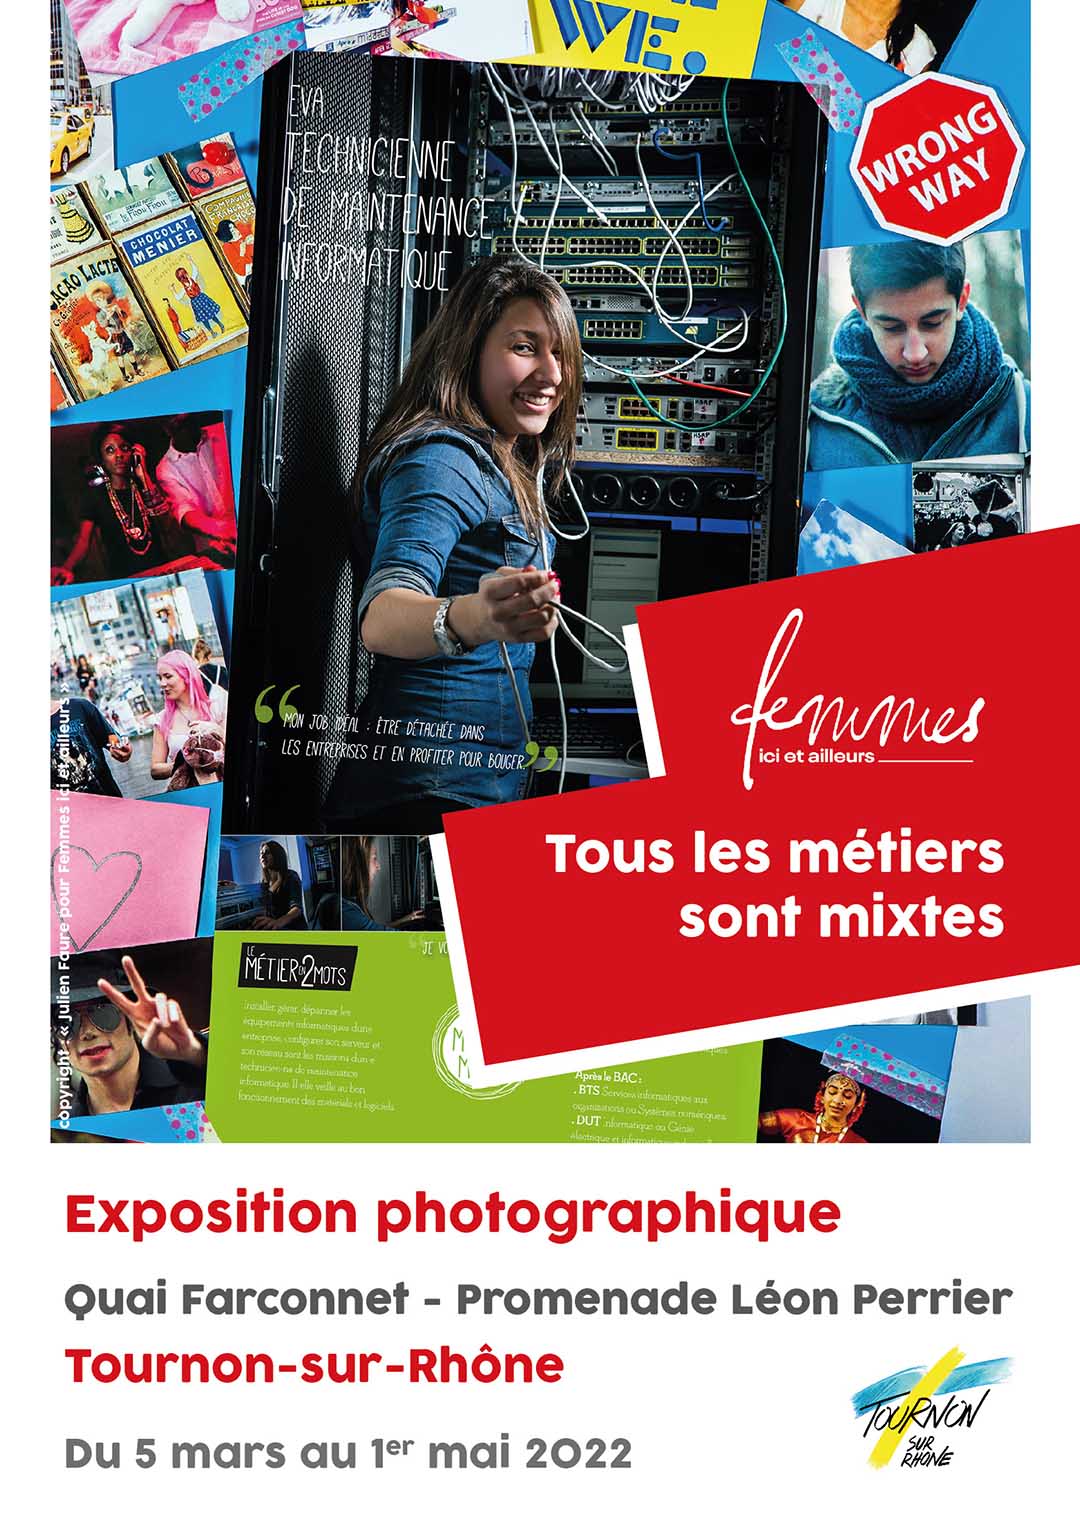 TOUS LES MÉTIERS SONT MIXTES. Exposition photographique du 5 mars au 1er mai 2022 - Promenade Léon Perrier - Tournon-sur-Rhône.